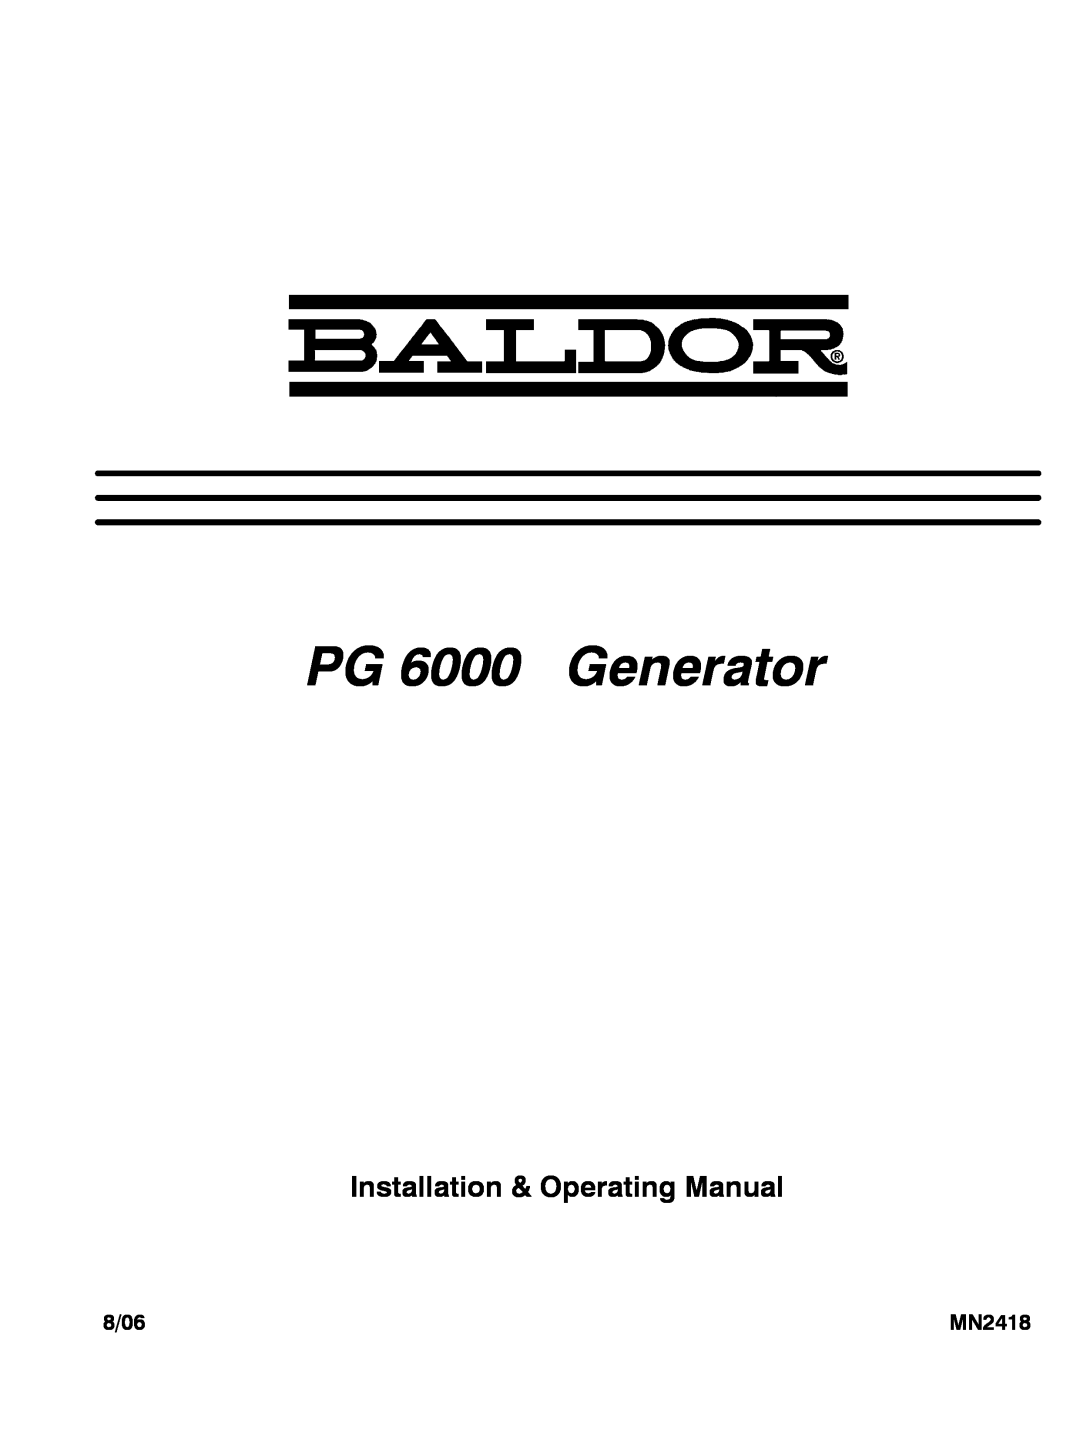 Baldor manual 8/06, MN2418, PG 6000 Generator, Installation & Operating Manual 